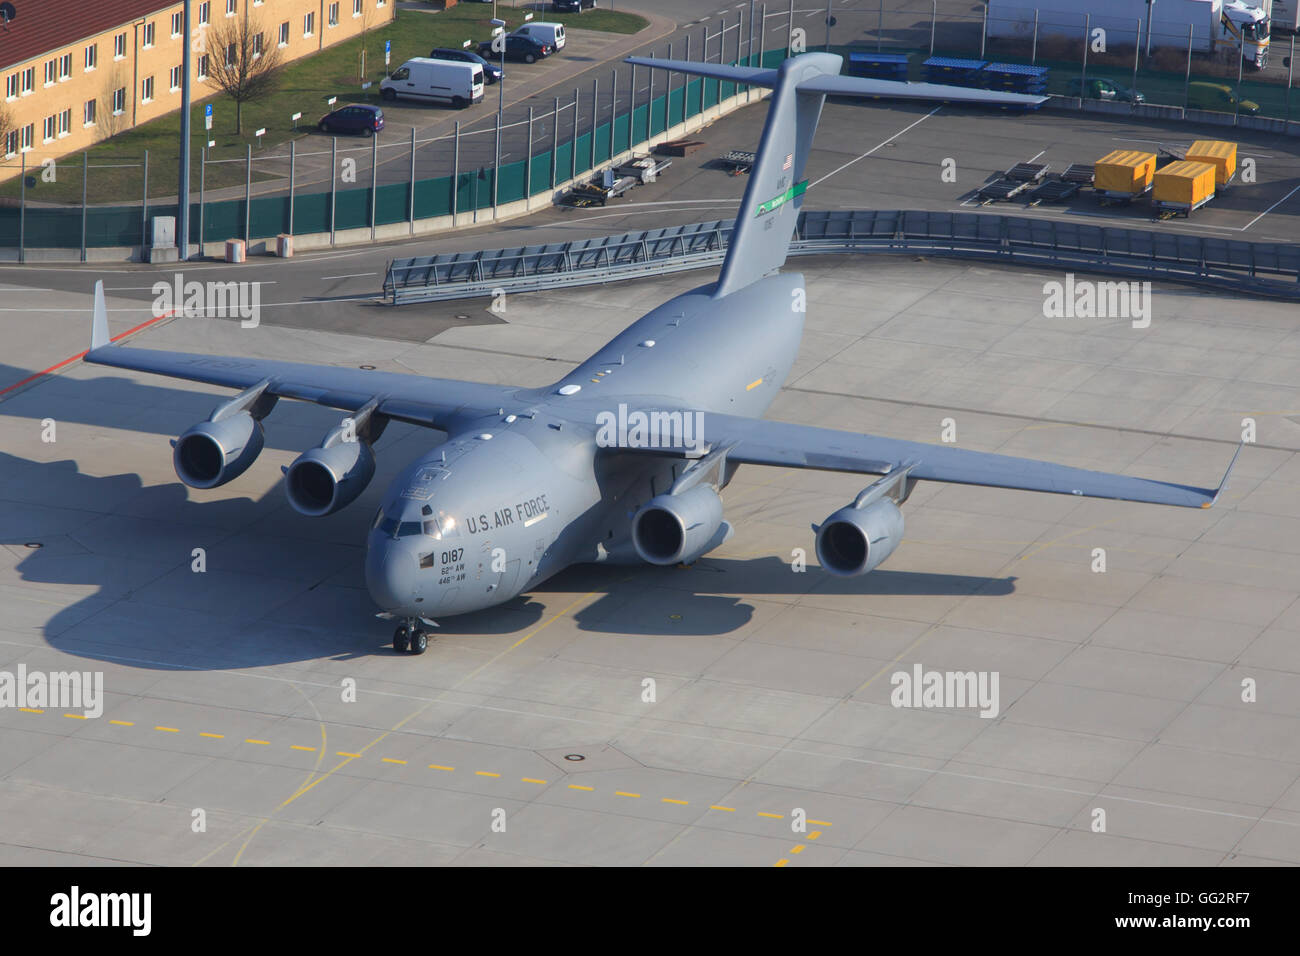 Stuttgart/Germany September 22, 2015: Globemaster C17 from USAF at Stuttgart Airport. Stock Photo